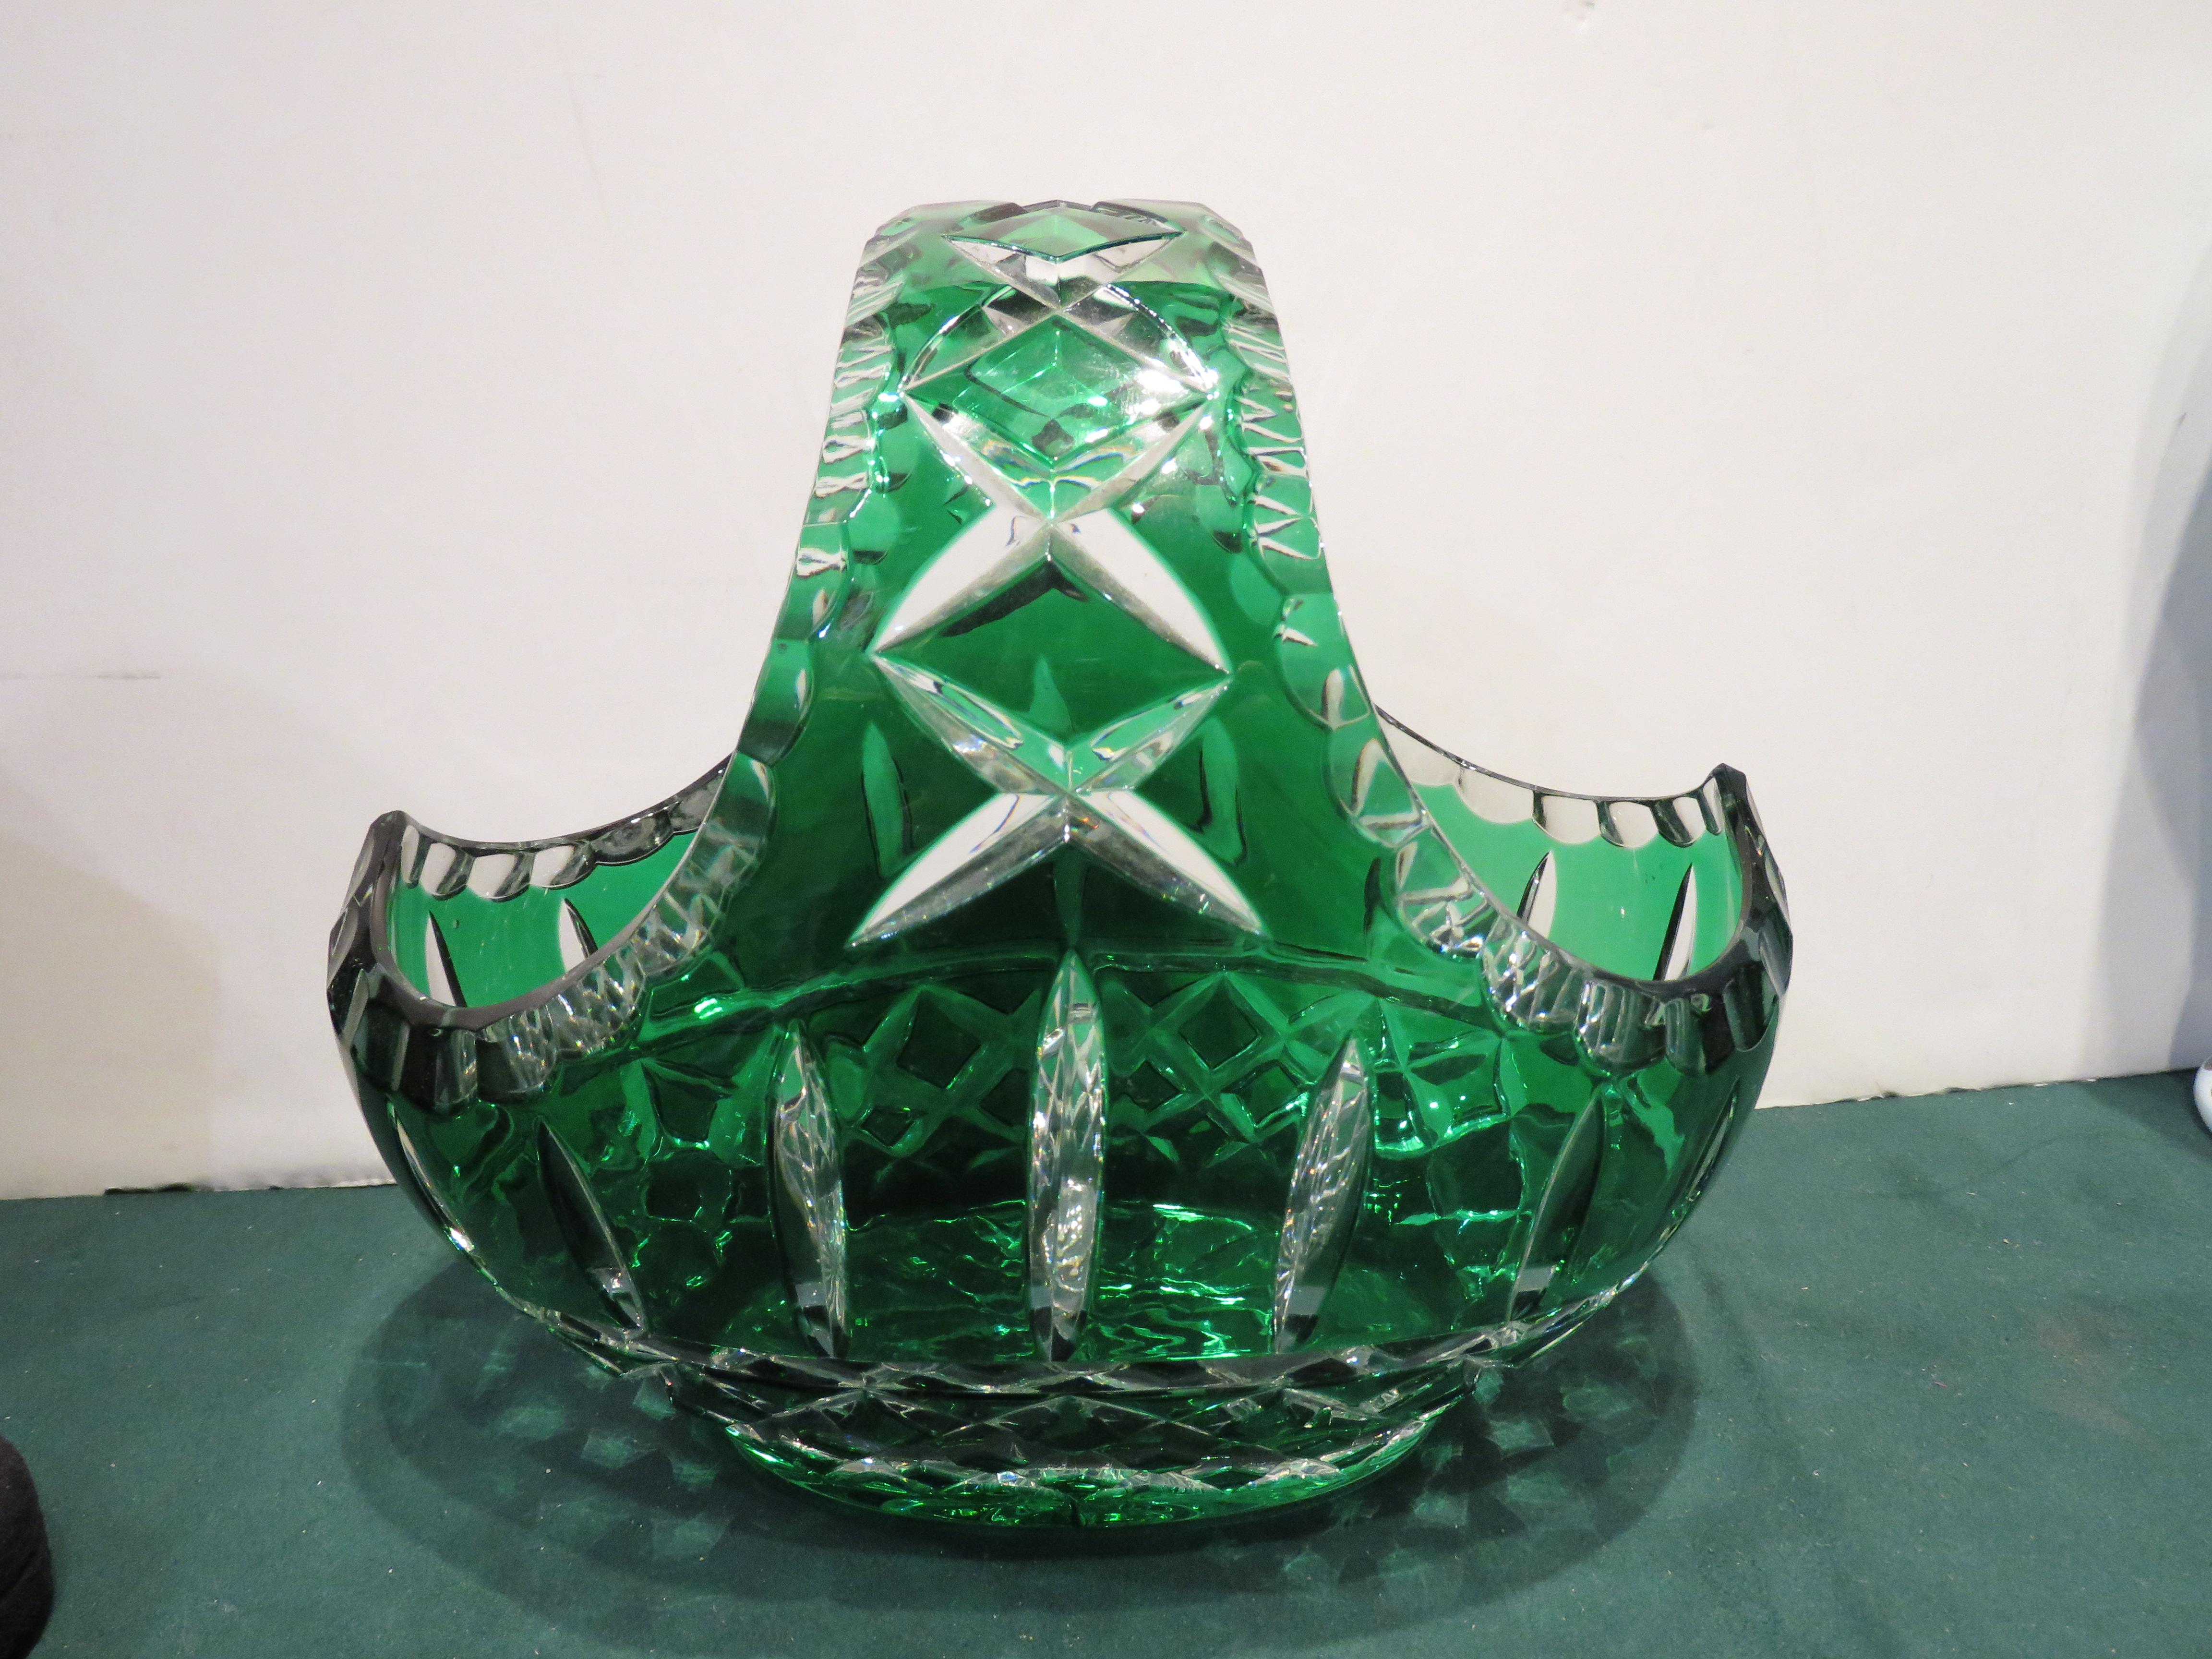 L'article suivant est un Rare Antique Lovely HEAVY HANDCUT Emerald Hand Crystal Glass Basket. Le panier est finement décoré d'un magnifique motif entouré de toutes parts.  
Approximativement : 7.5